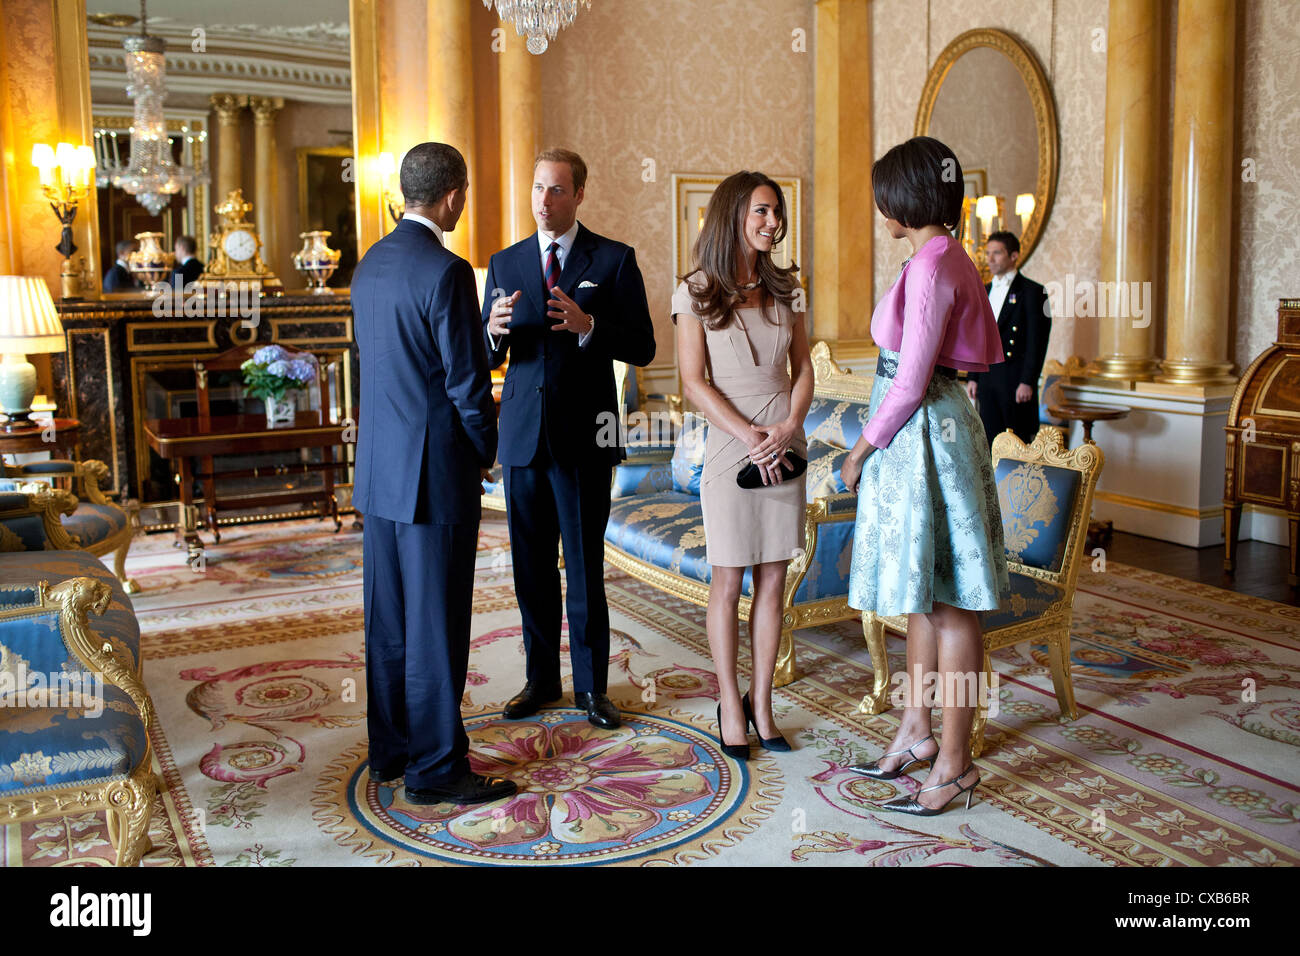 Präsident Barack Obama und First Lady Michelle Obama sprechen mit der Herzog und die Herzogin von Cambridge im Jahr 1844 Zimmer 24. Mai 2011 im Buckingham Palace in London, England. Stockfoto